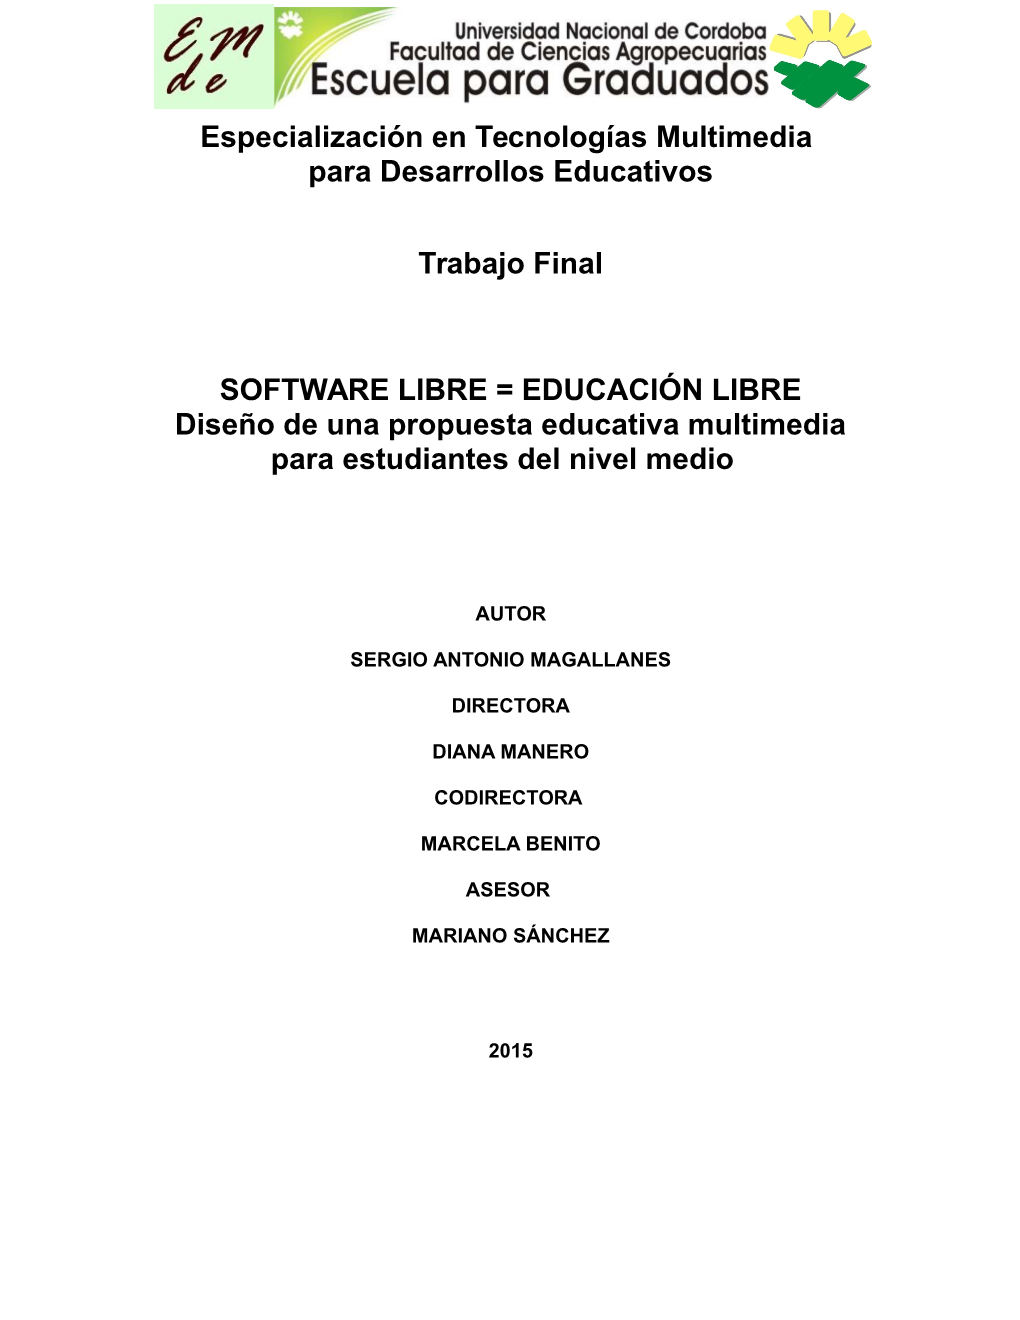 Software Libre Educación Libre, Diseño De Una Propuesta